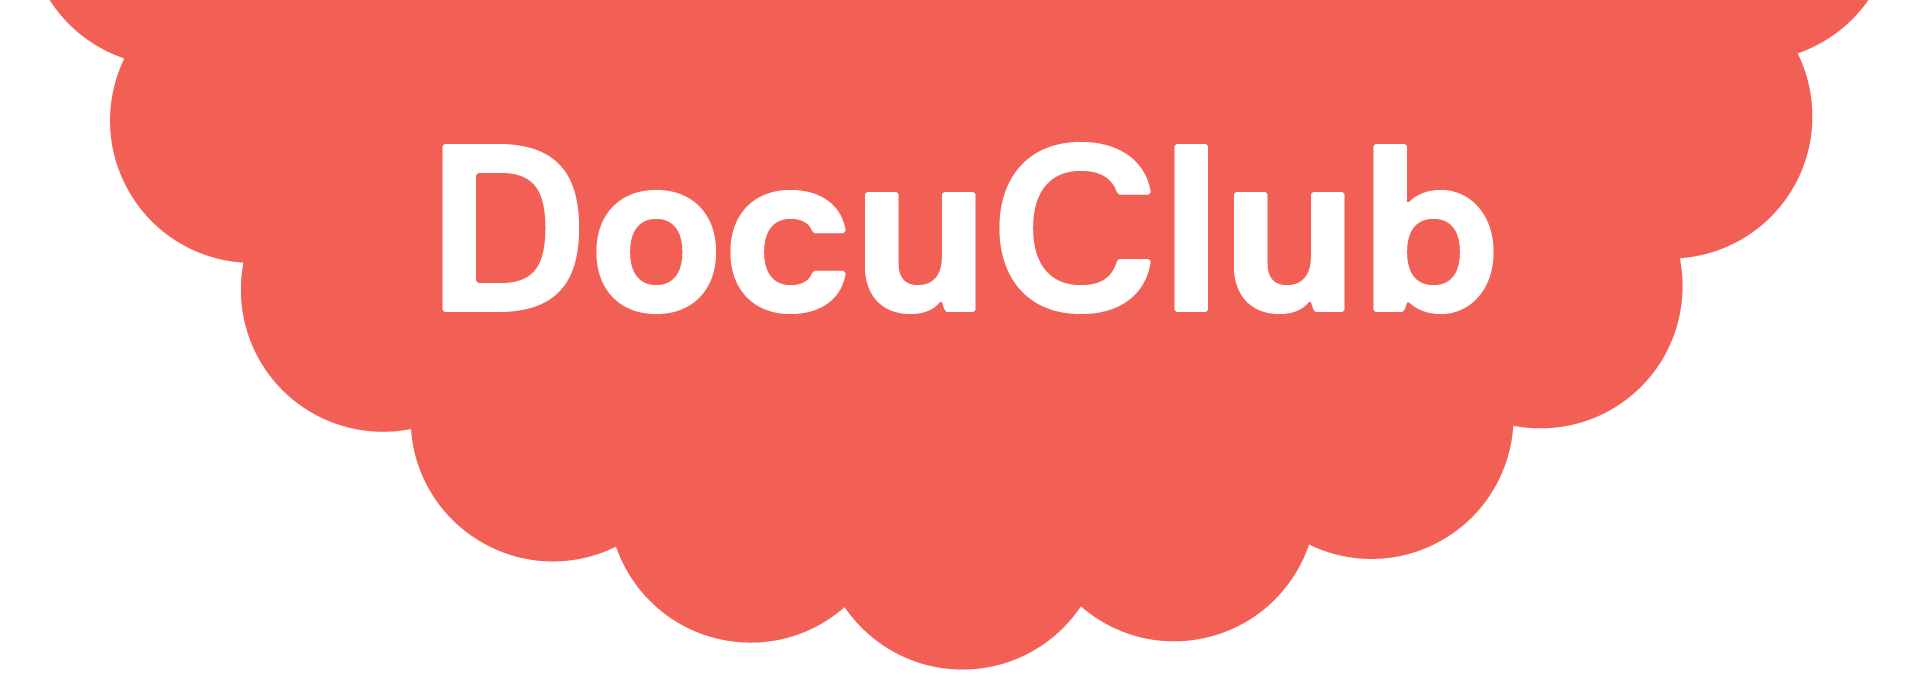 DocuClub